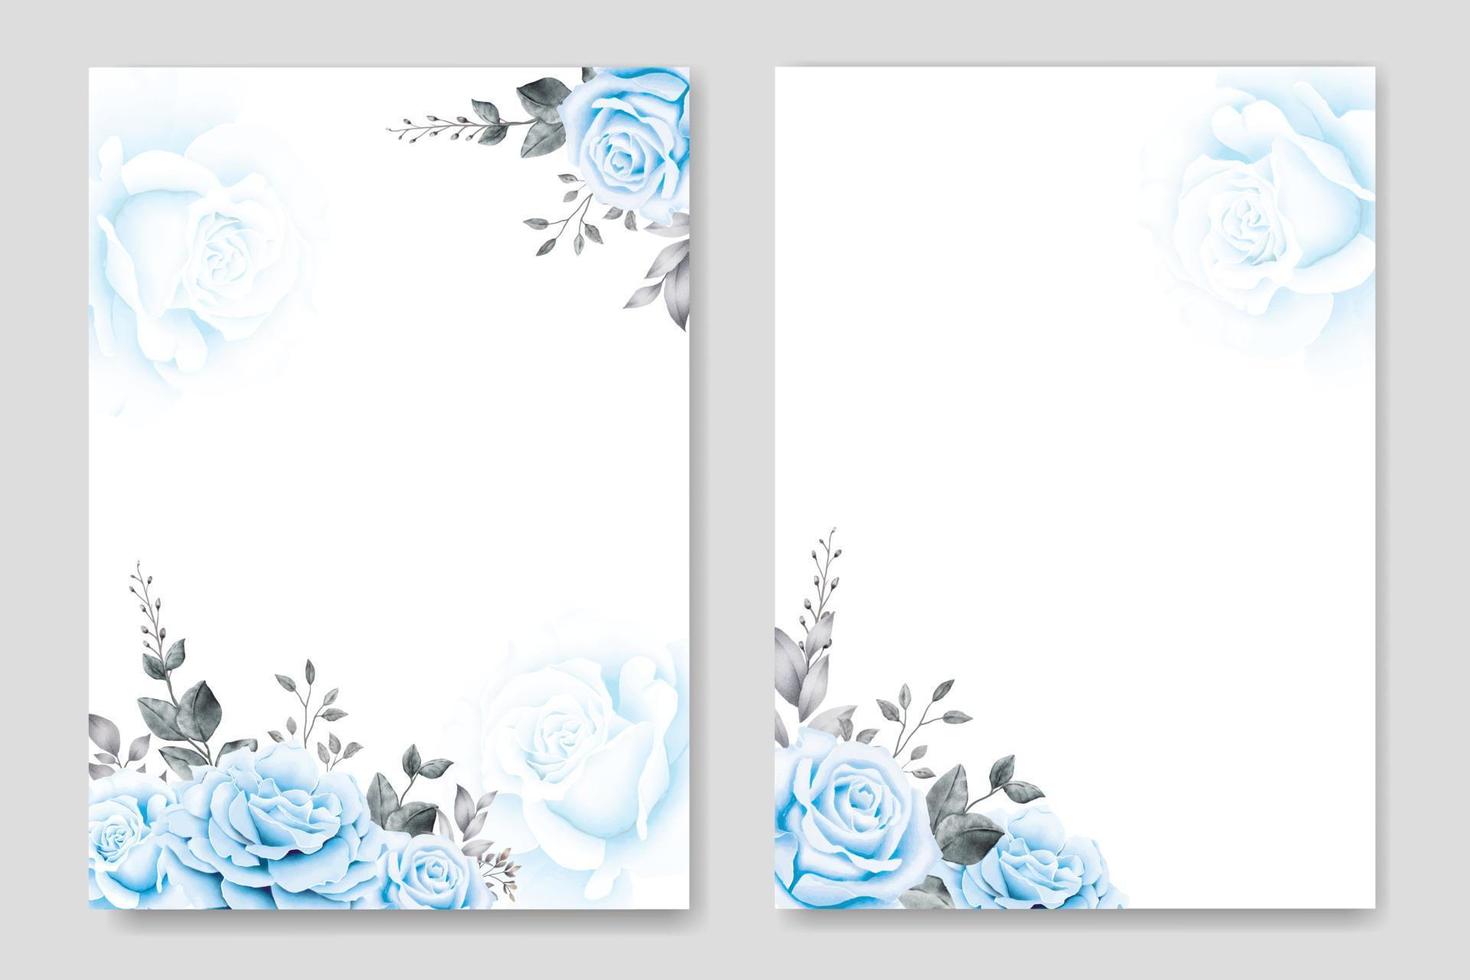 modelo de cartão de convite de casamento azul marinho floral vetor